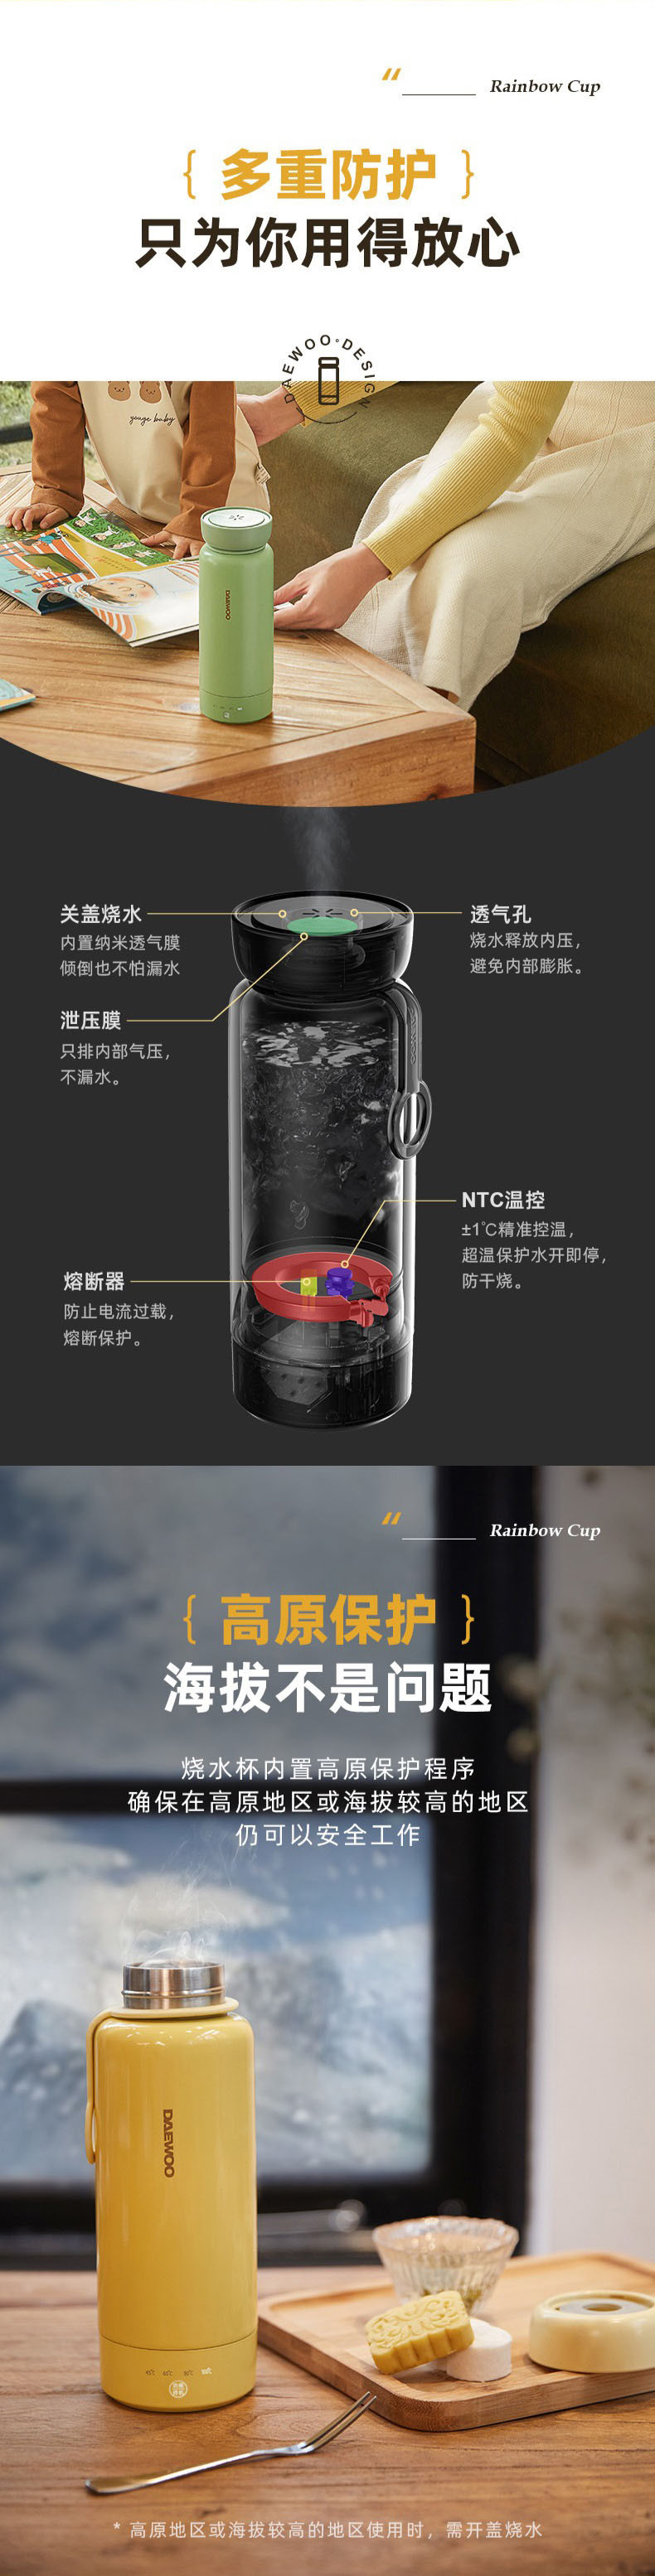 大宇(DAEWOO) 电水壶 烧水壶便携式电热水杯家用旅行电热水壶冲奶泡茶办公室养生保温杯300ml